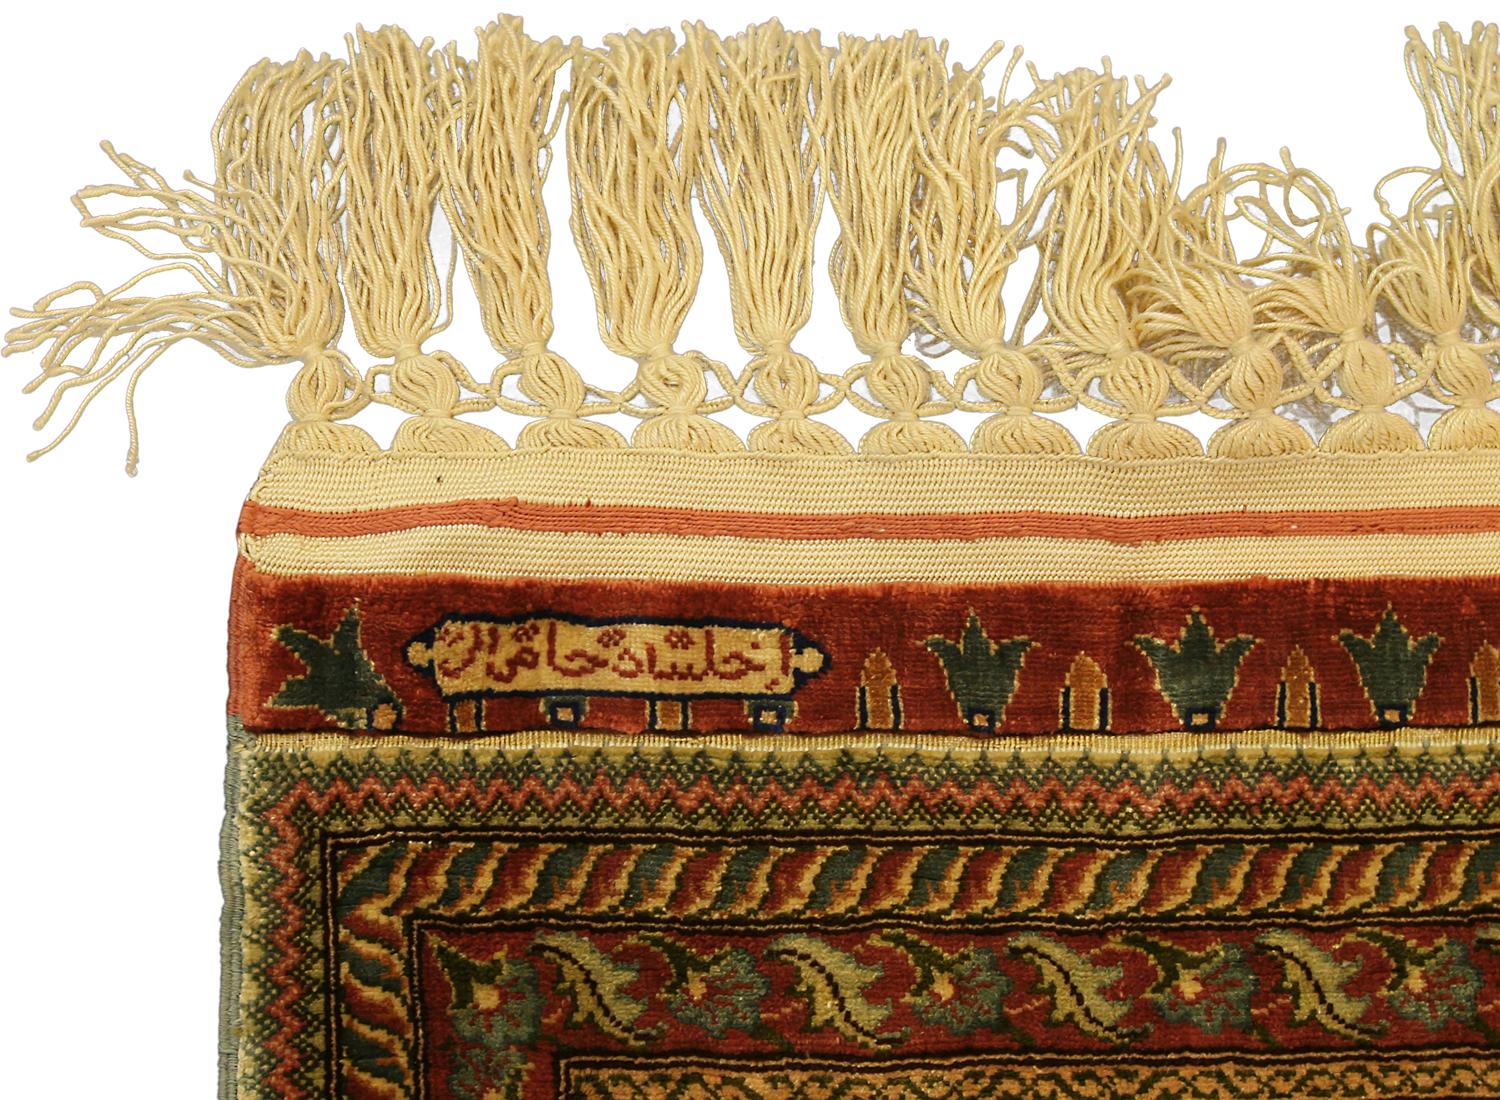 Il s'agit d'un tapis turc Hereke en soie et fils métalliques, tissé en Turquie au début du 21e siècle, vers 2000-2010. Il mesure 135 x 89 cm. Son design consiste en deux colonnes avec trois médaillons répétitifs décorés d'un bouquet de différentes